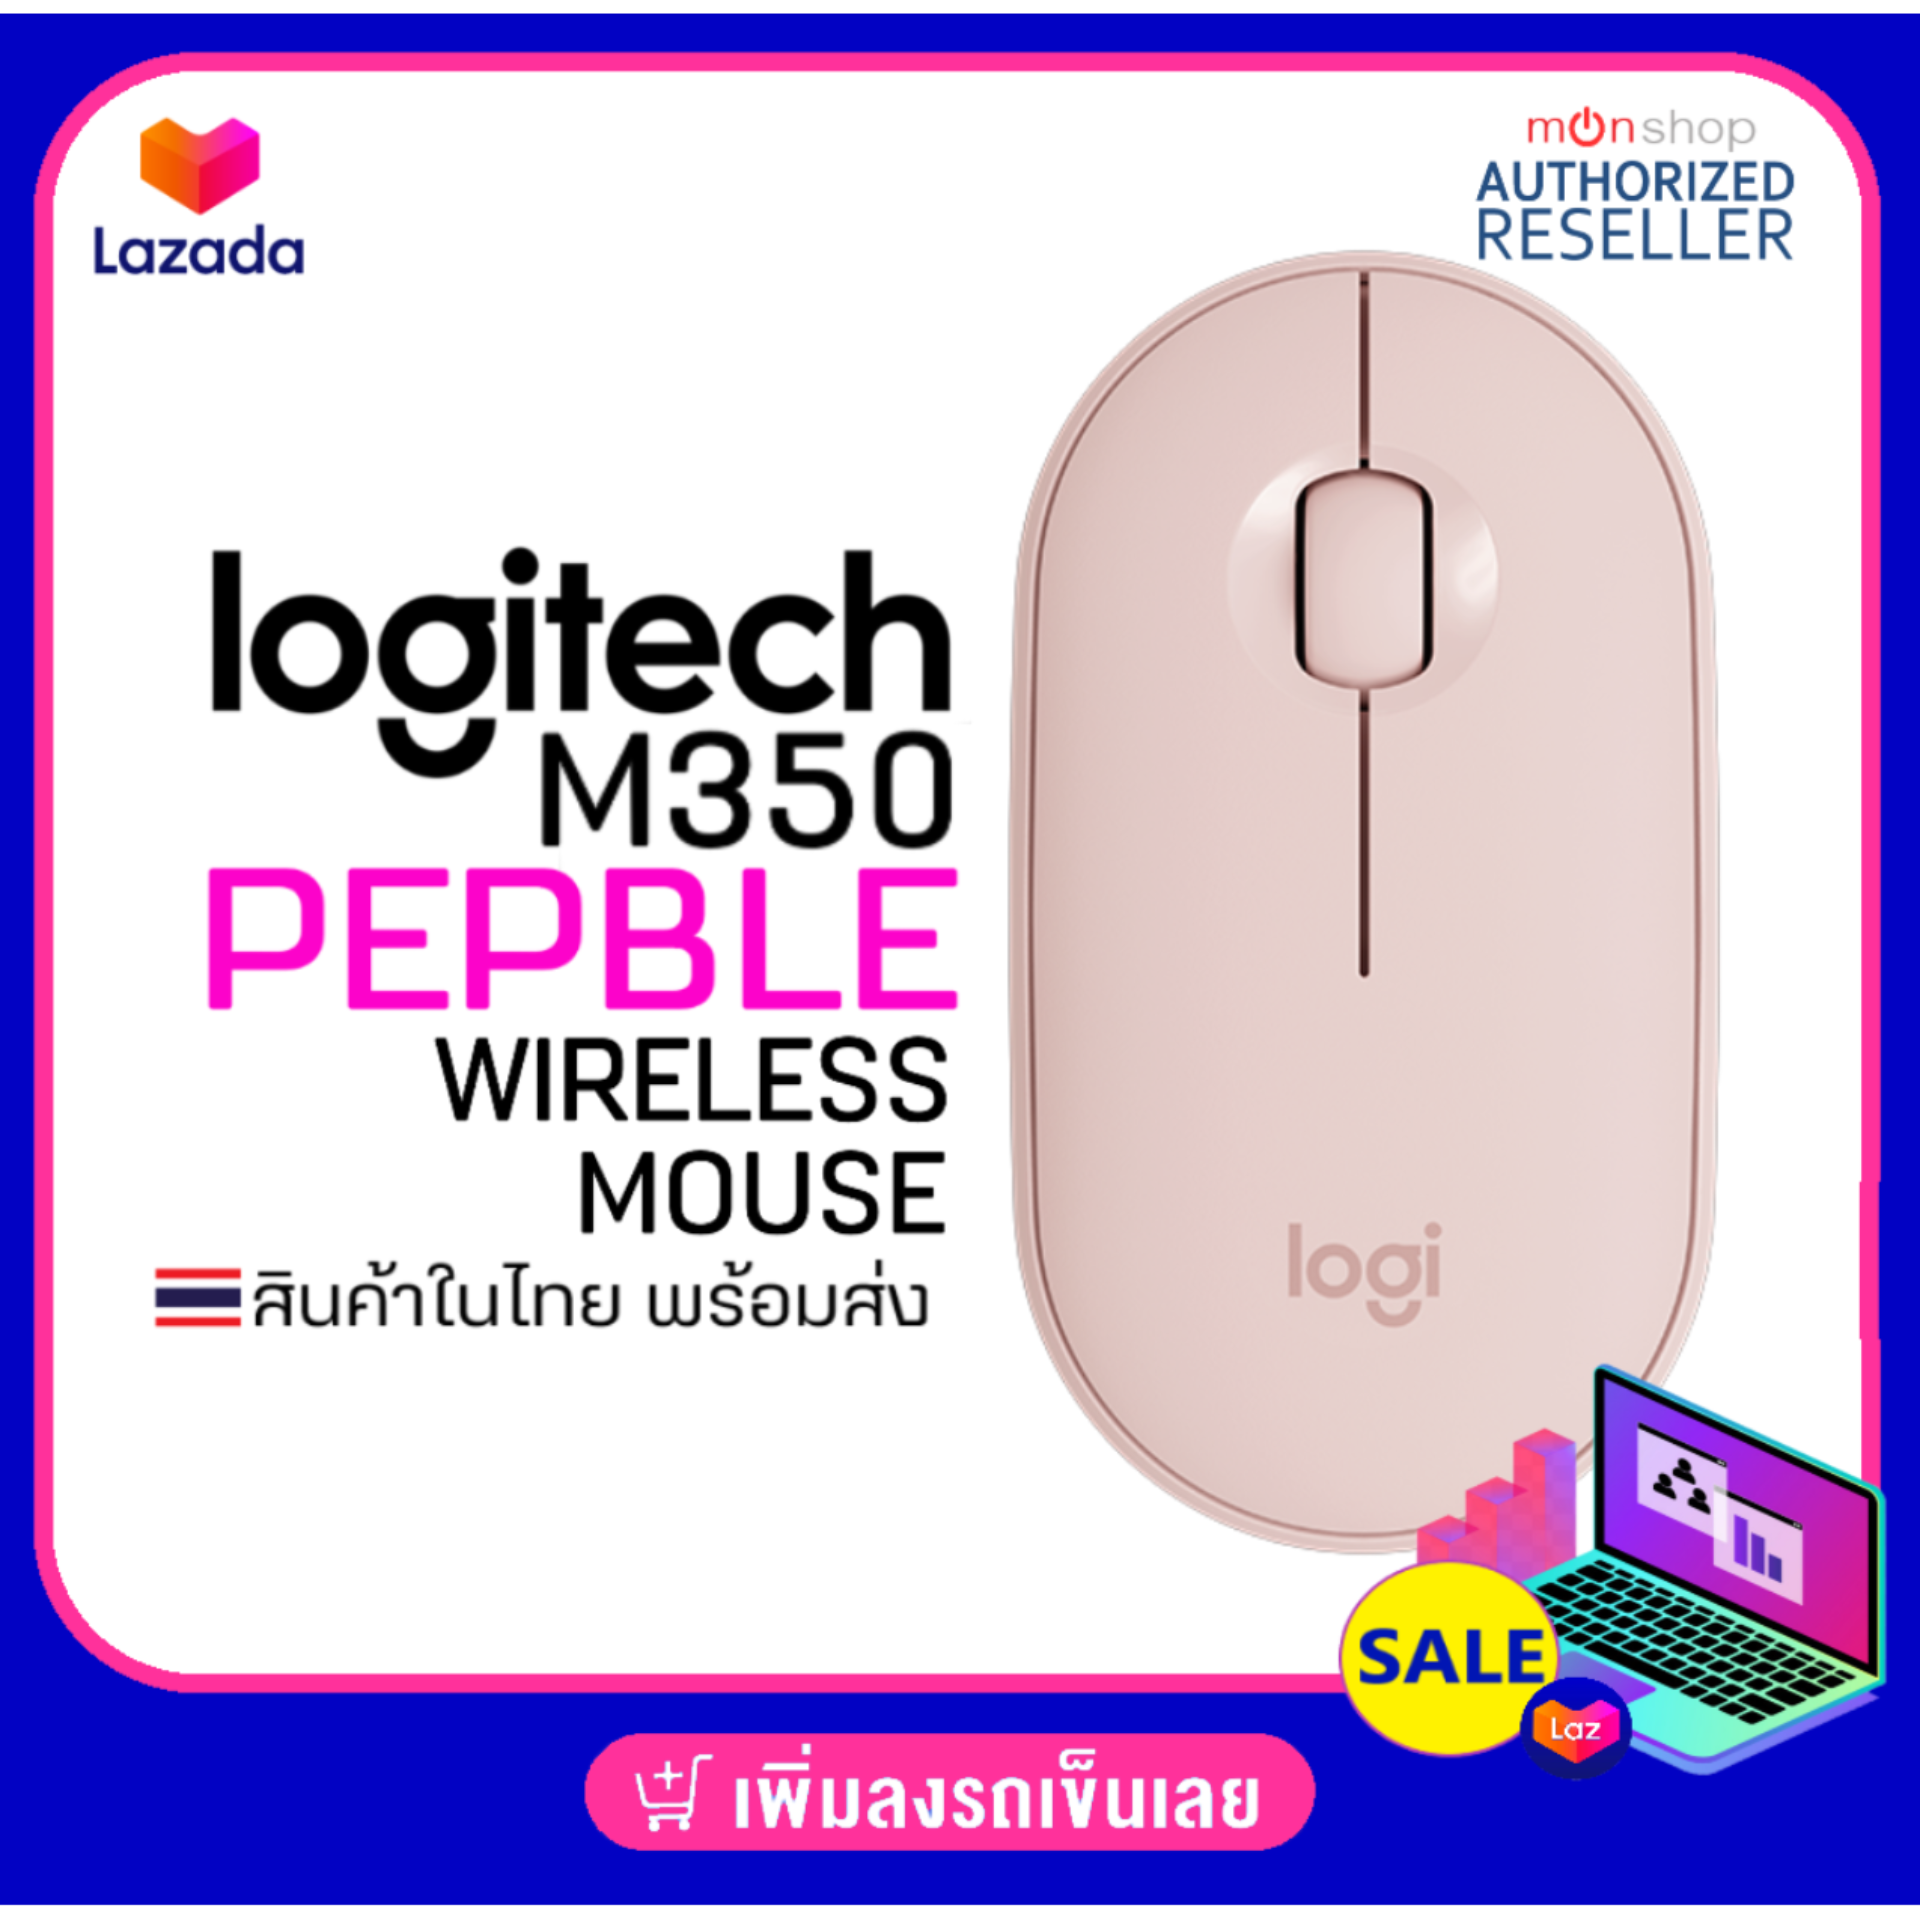 Logitech M350 Pebble Wireless & Bluetooth Mouse เม้าส์ 2 ระบบ ของแท้ รับประกันศูนย์ 1 ปี by Monticha